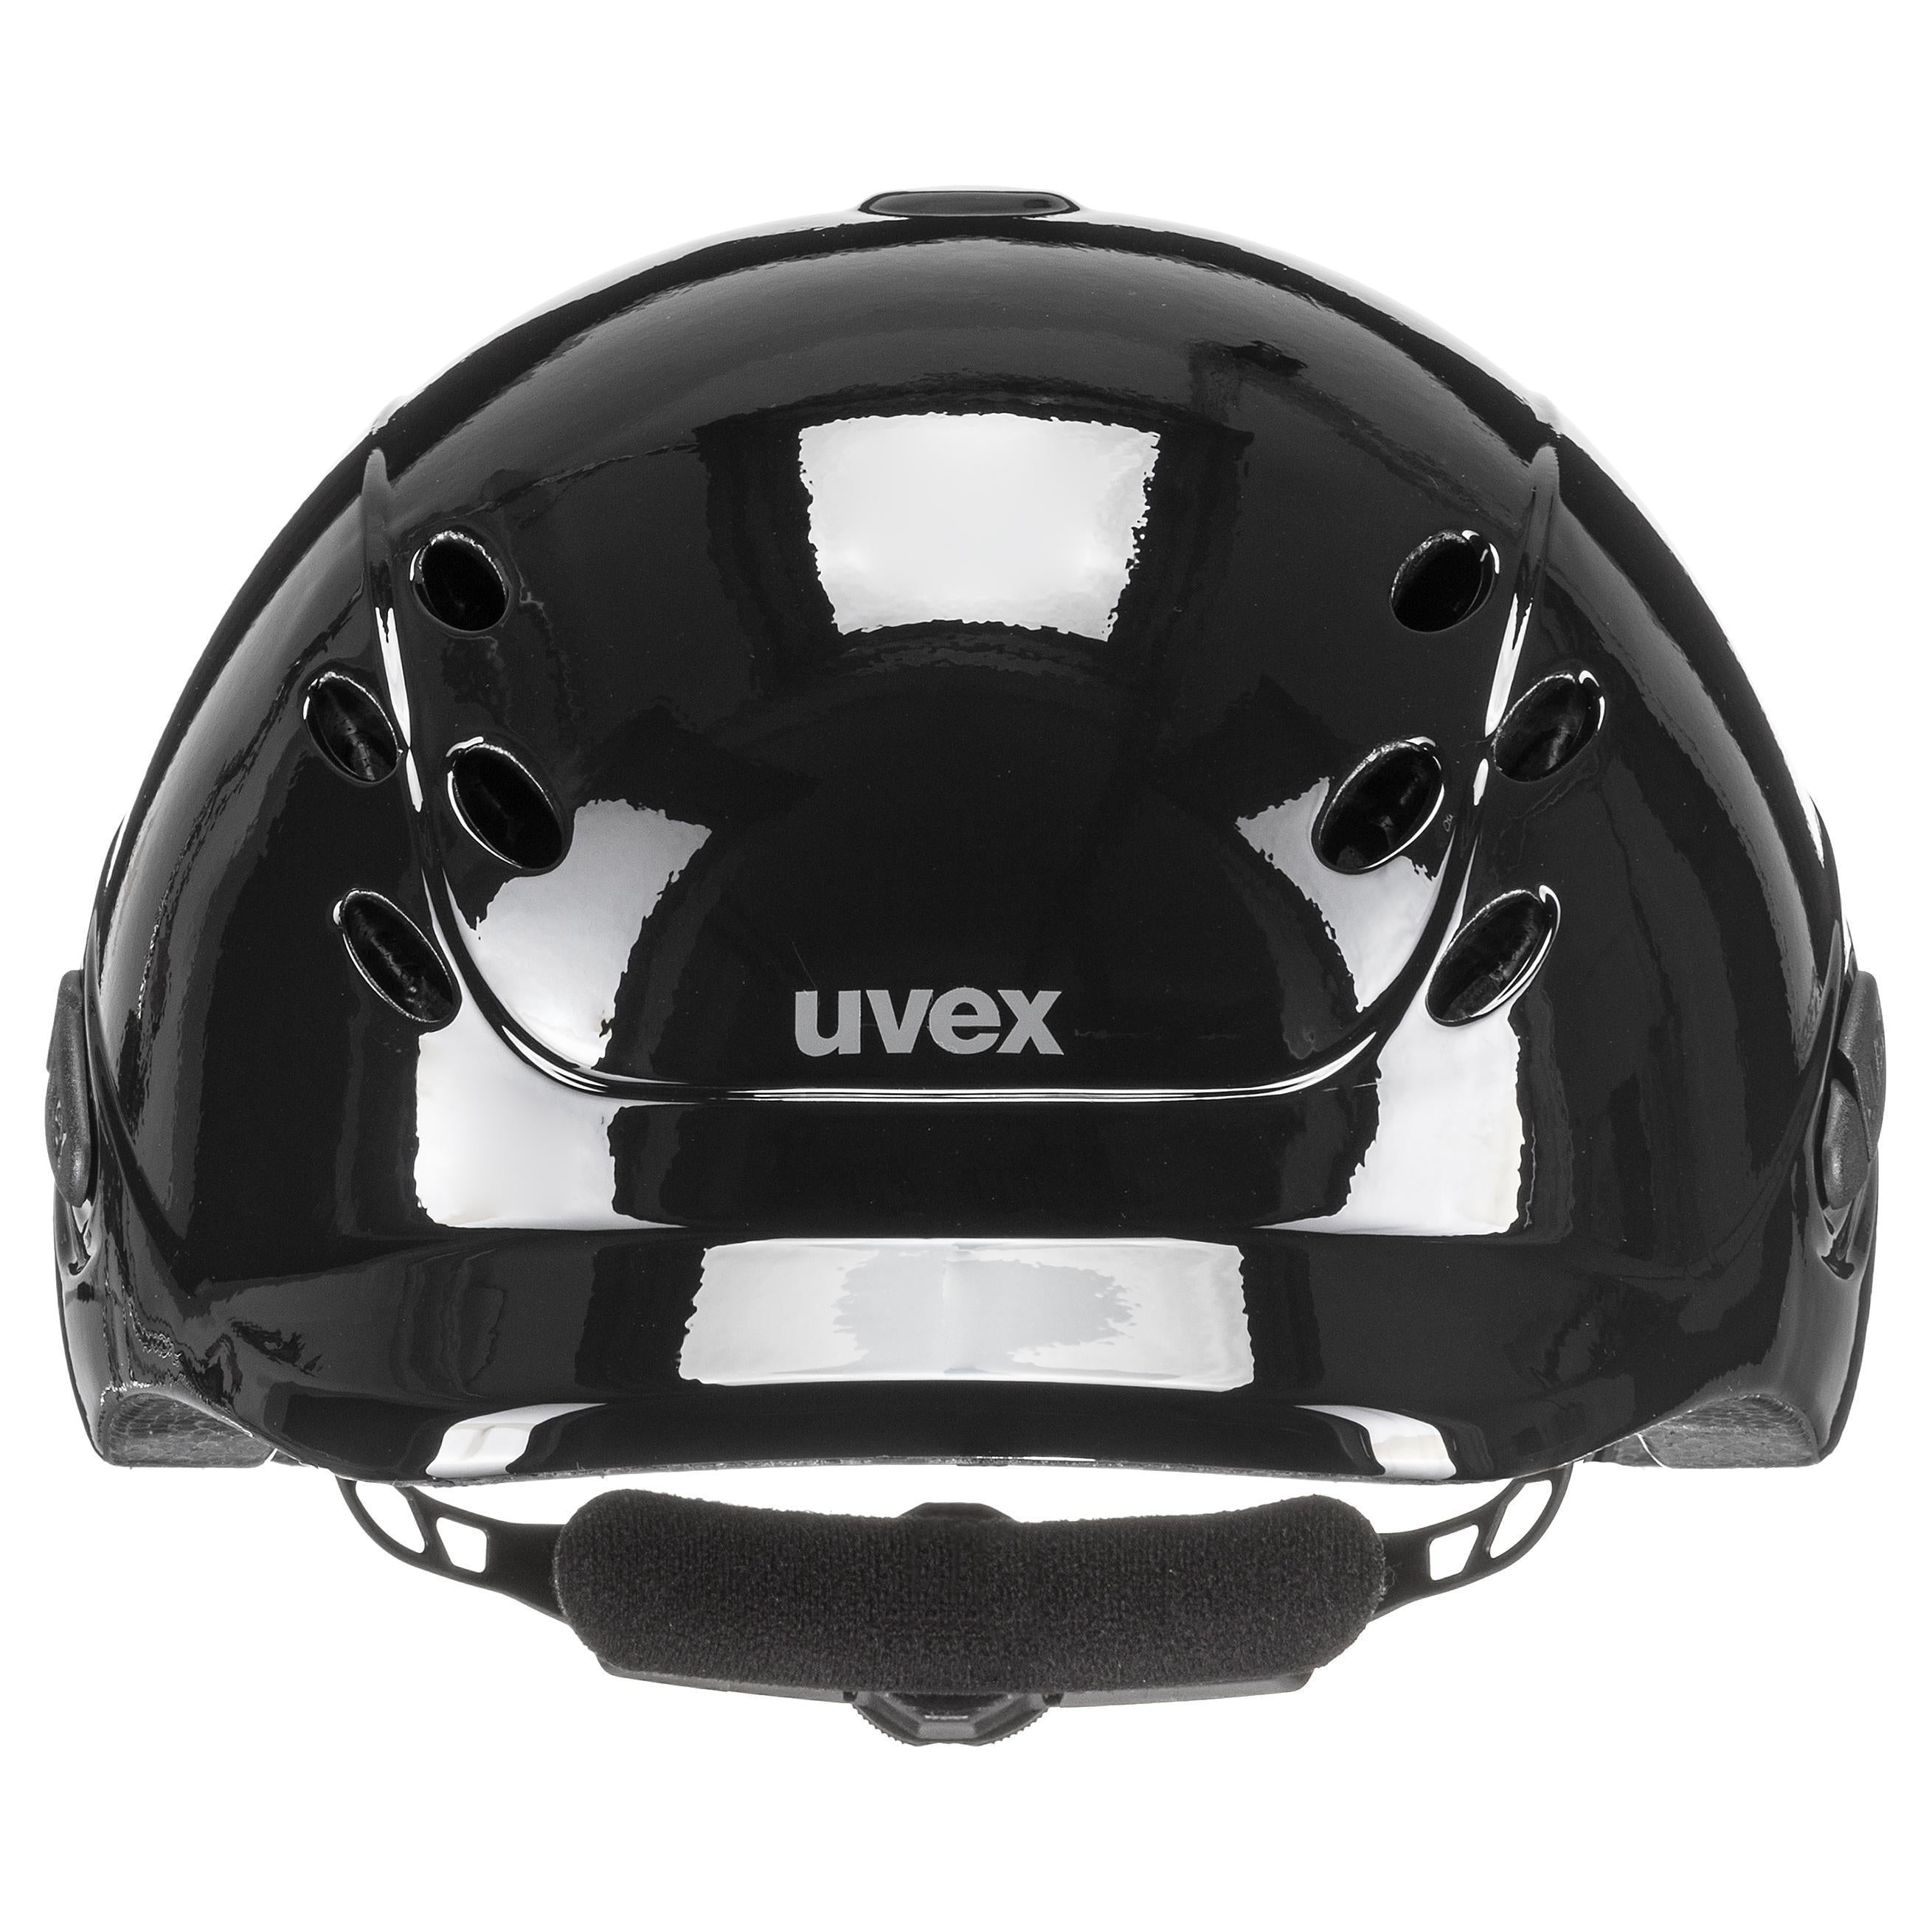 Gorro de equitación infantil ajustable Uvex talla 49-54 cm onyxx liso negro brillante (NUEVO)